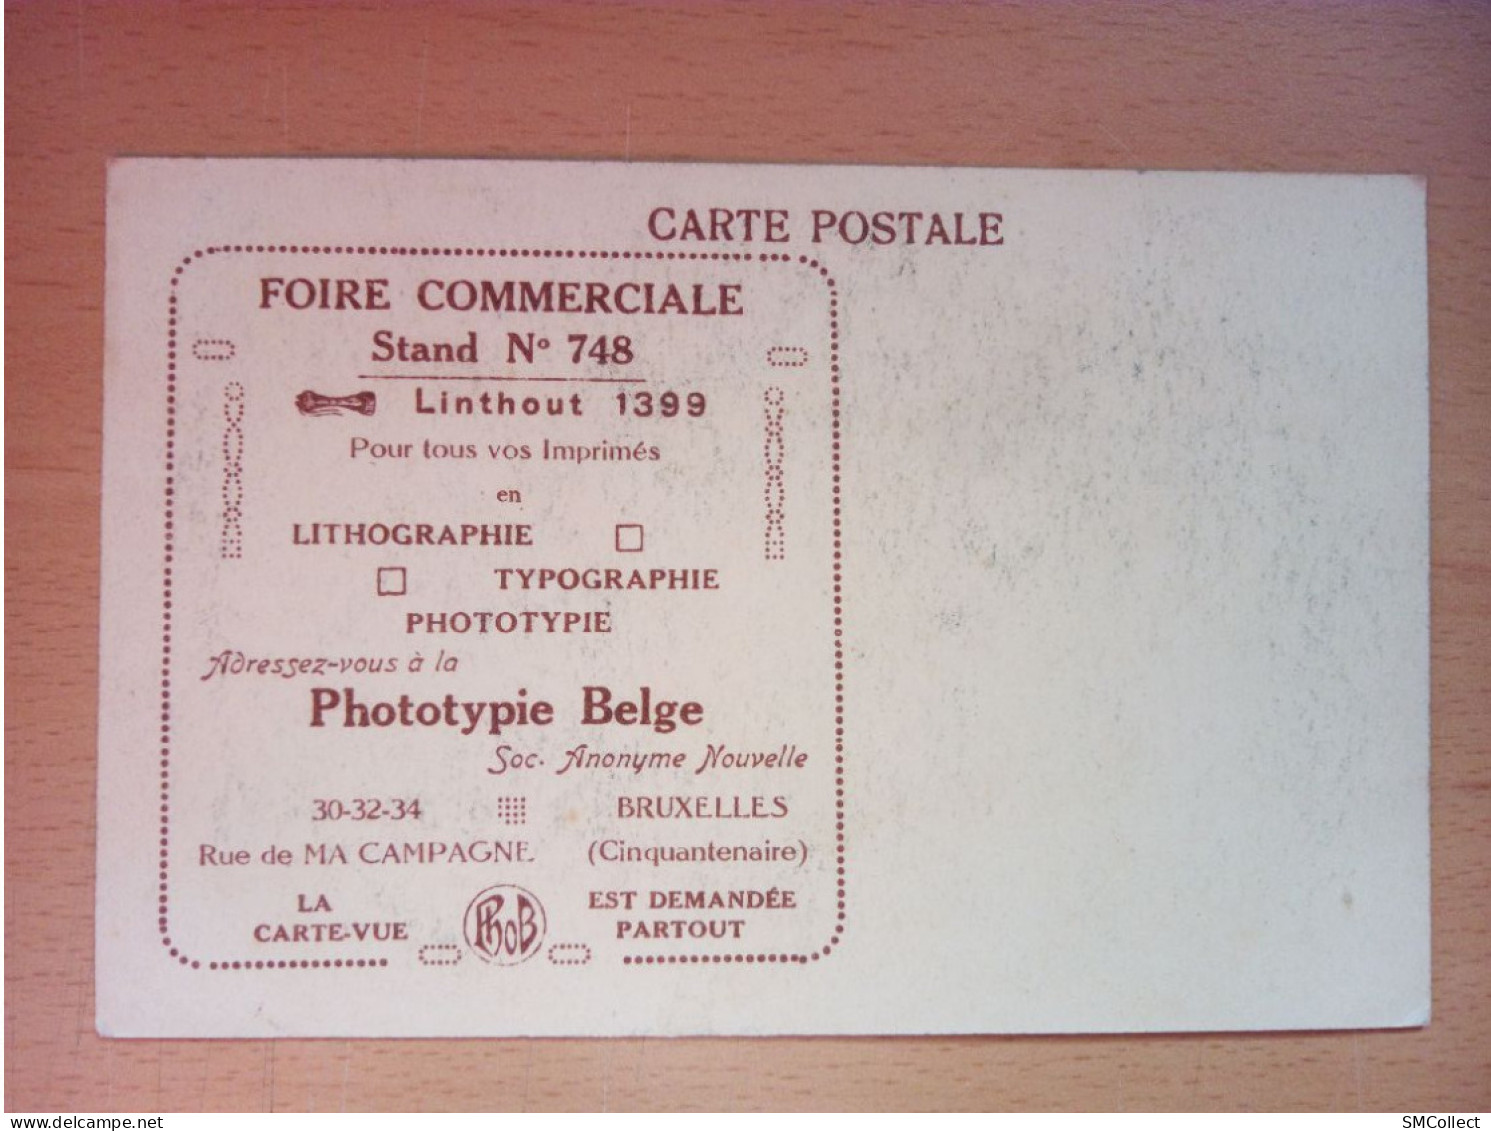 Bruxelles, Foire Commerciale. Carte Publicitaire Pour La Phototypie Belge  (A17p49) - Werbepostkarten